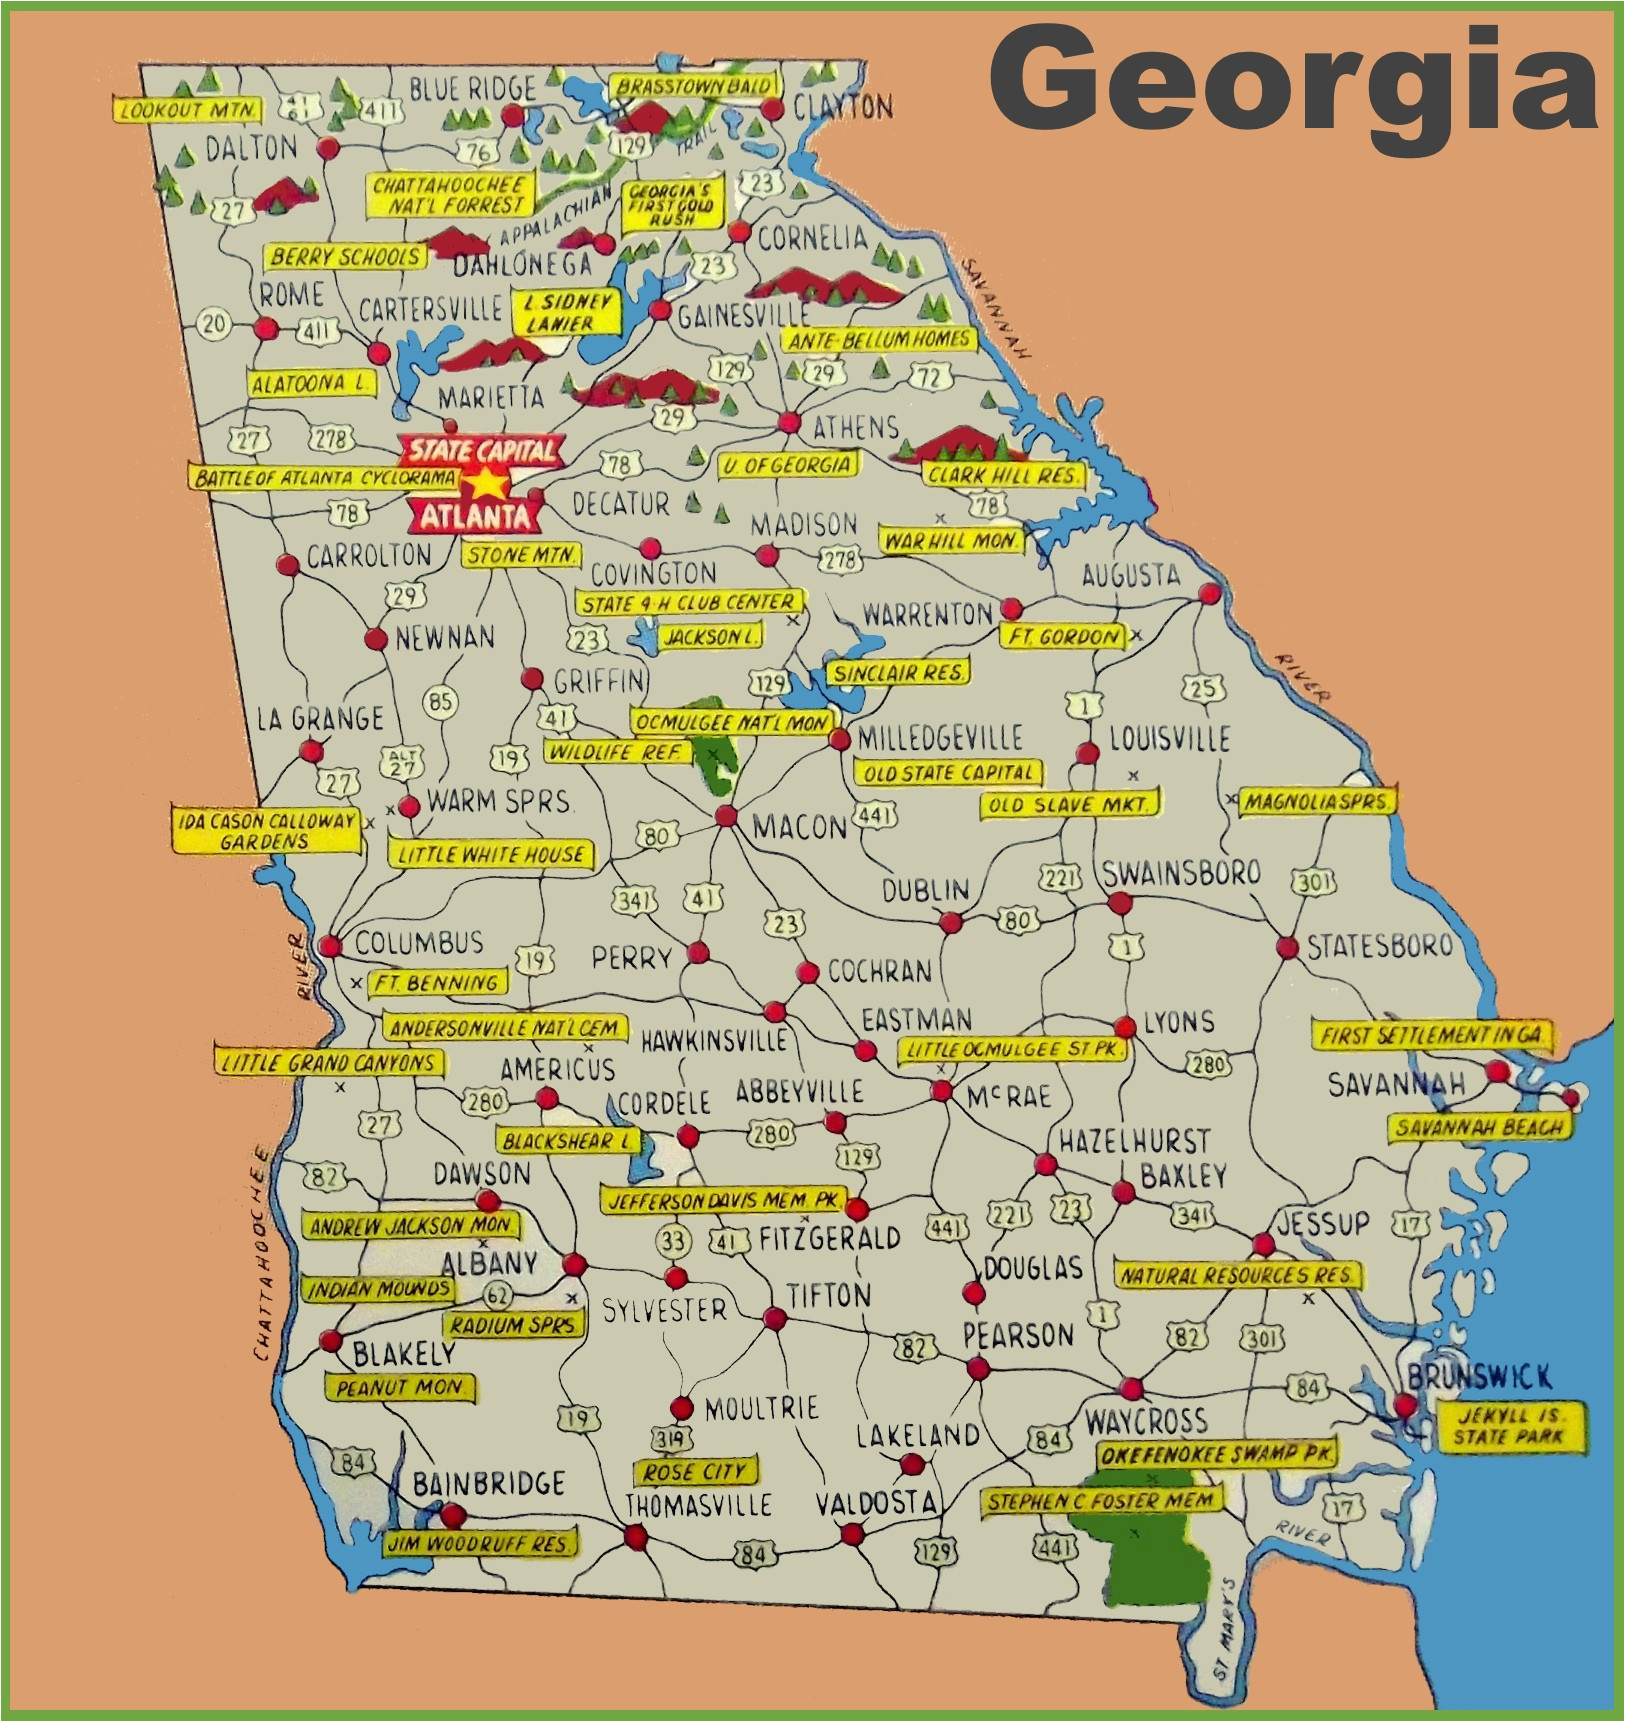 georgia state parks map Georgia State Park Map